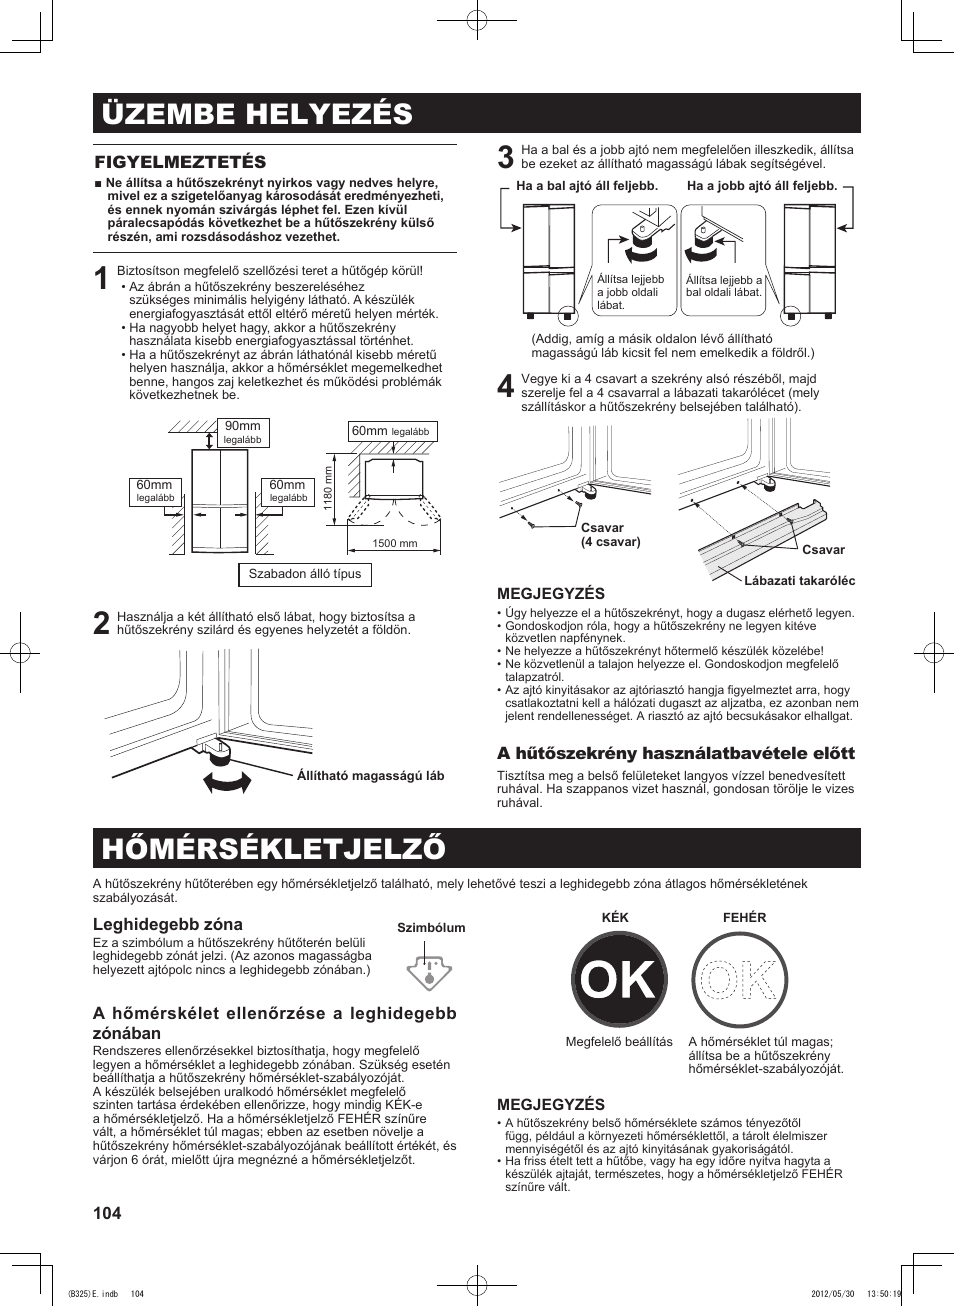 Üzembe helyezés, Hőmérsékletjelző, 114 figyelmeztetés | A hűtőszekrény használatbavétele előtt, Leghidegebb zóna, A hőmérskélet ellenőrzése a leghidegebb zónában | Sharp SJ-FP760VST User Manual | Page 104 / 224